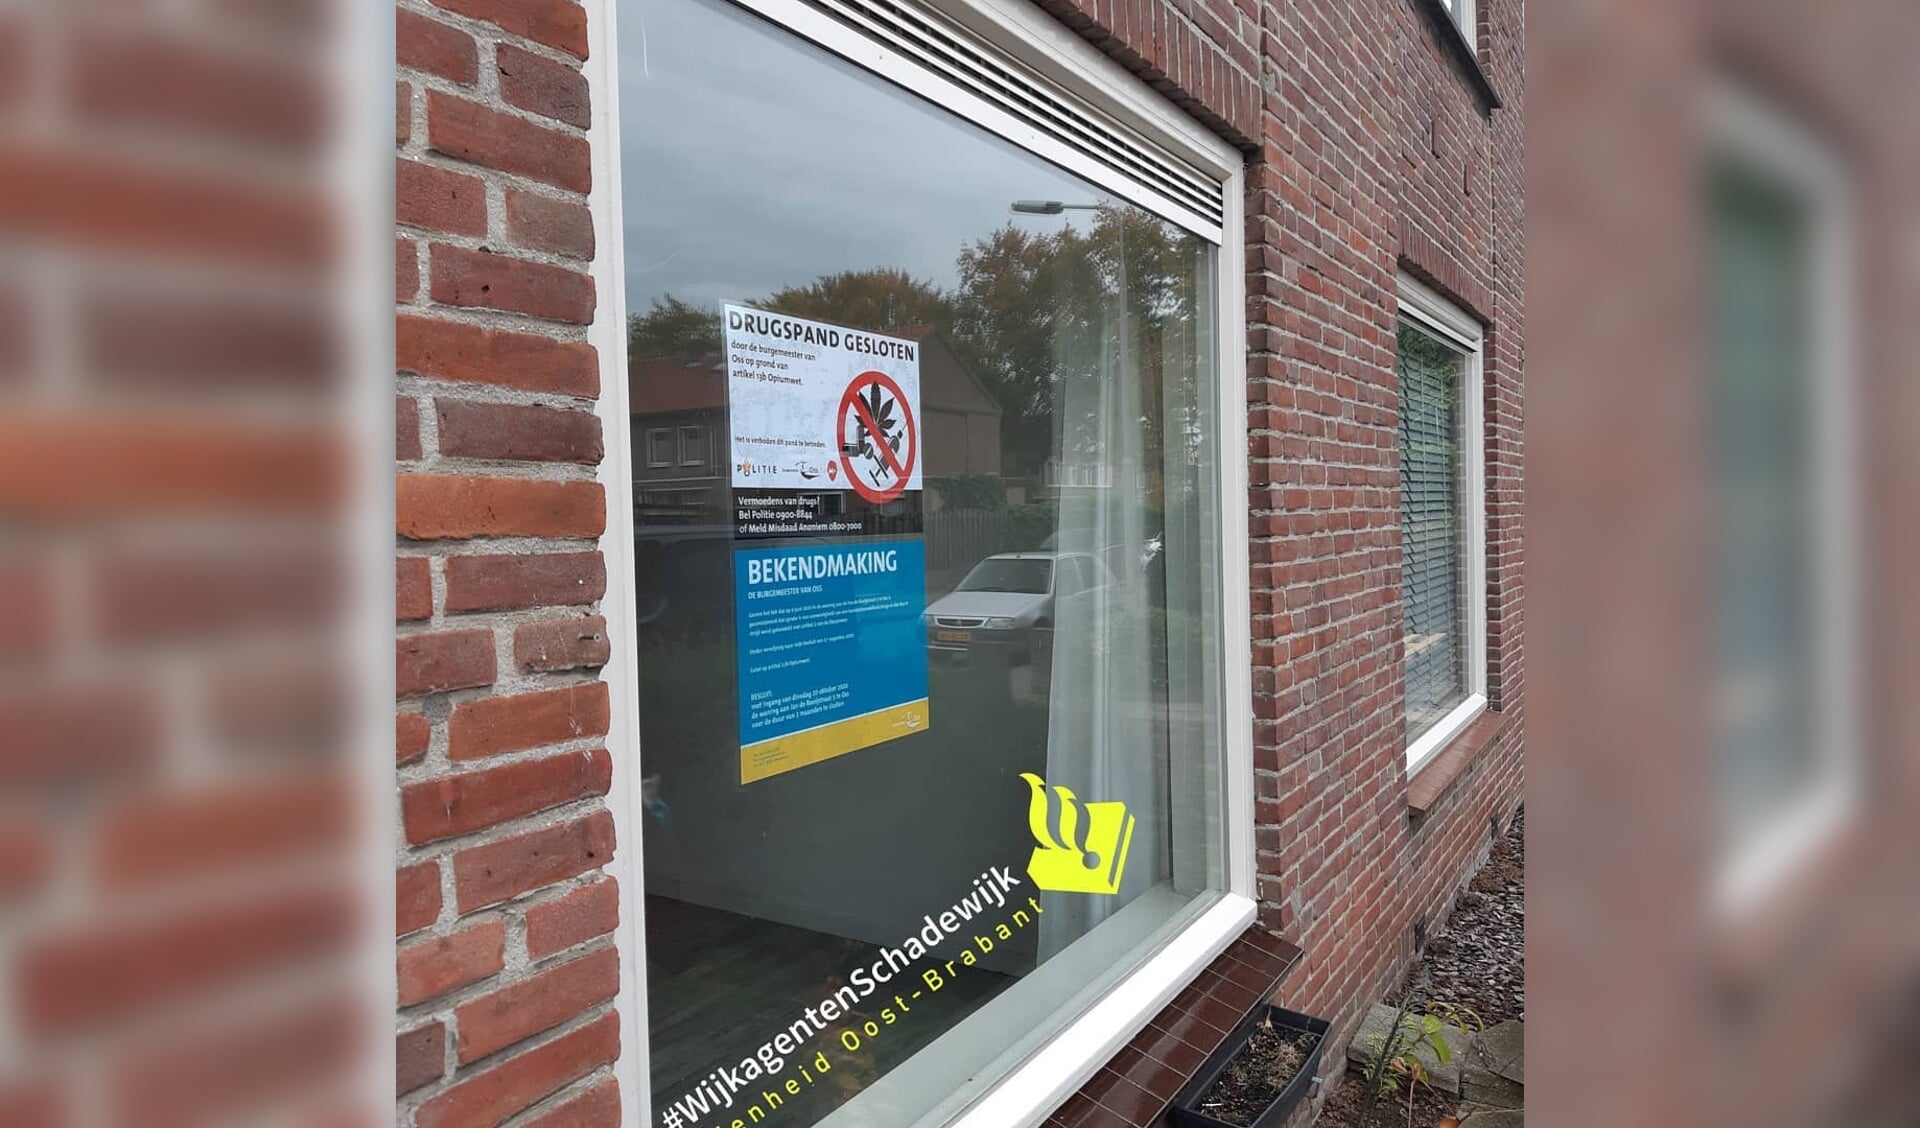 Woning Jan de Rooijstraat gesloten na vondst harddrugs. (Bron: wijkagenten Schadewijk, social media)